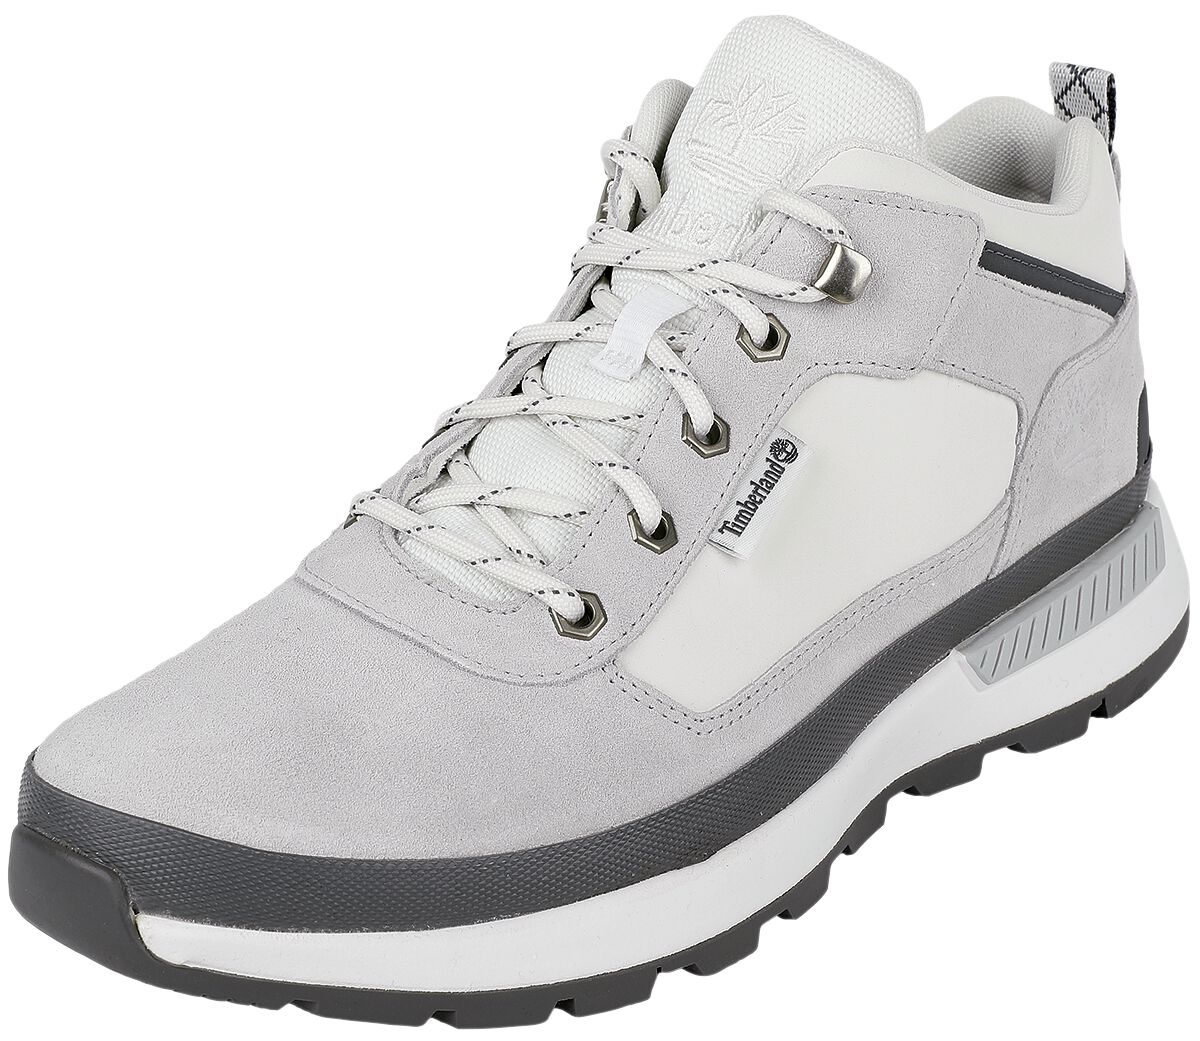 Timberland Field Trekker Low Light Grey Suede Sneakers white